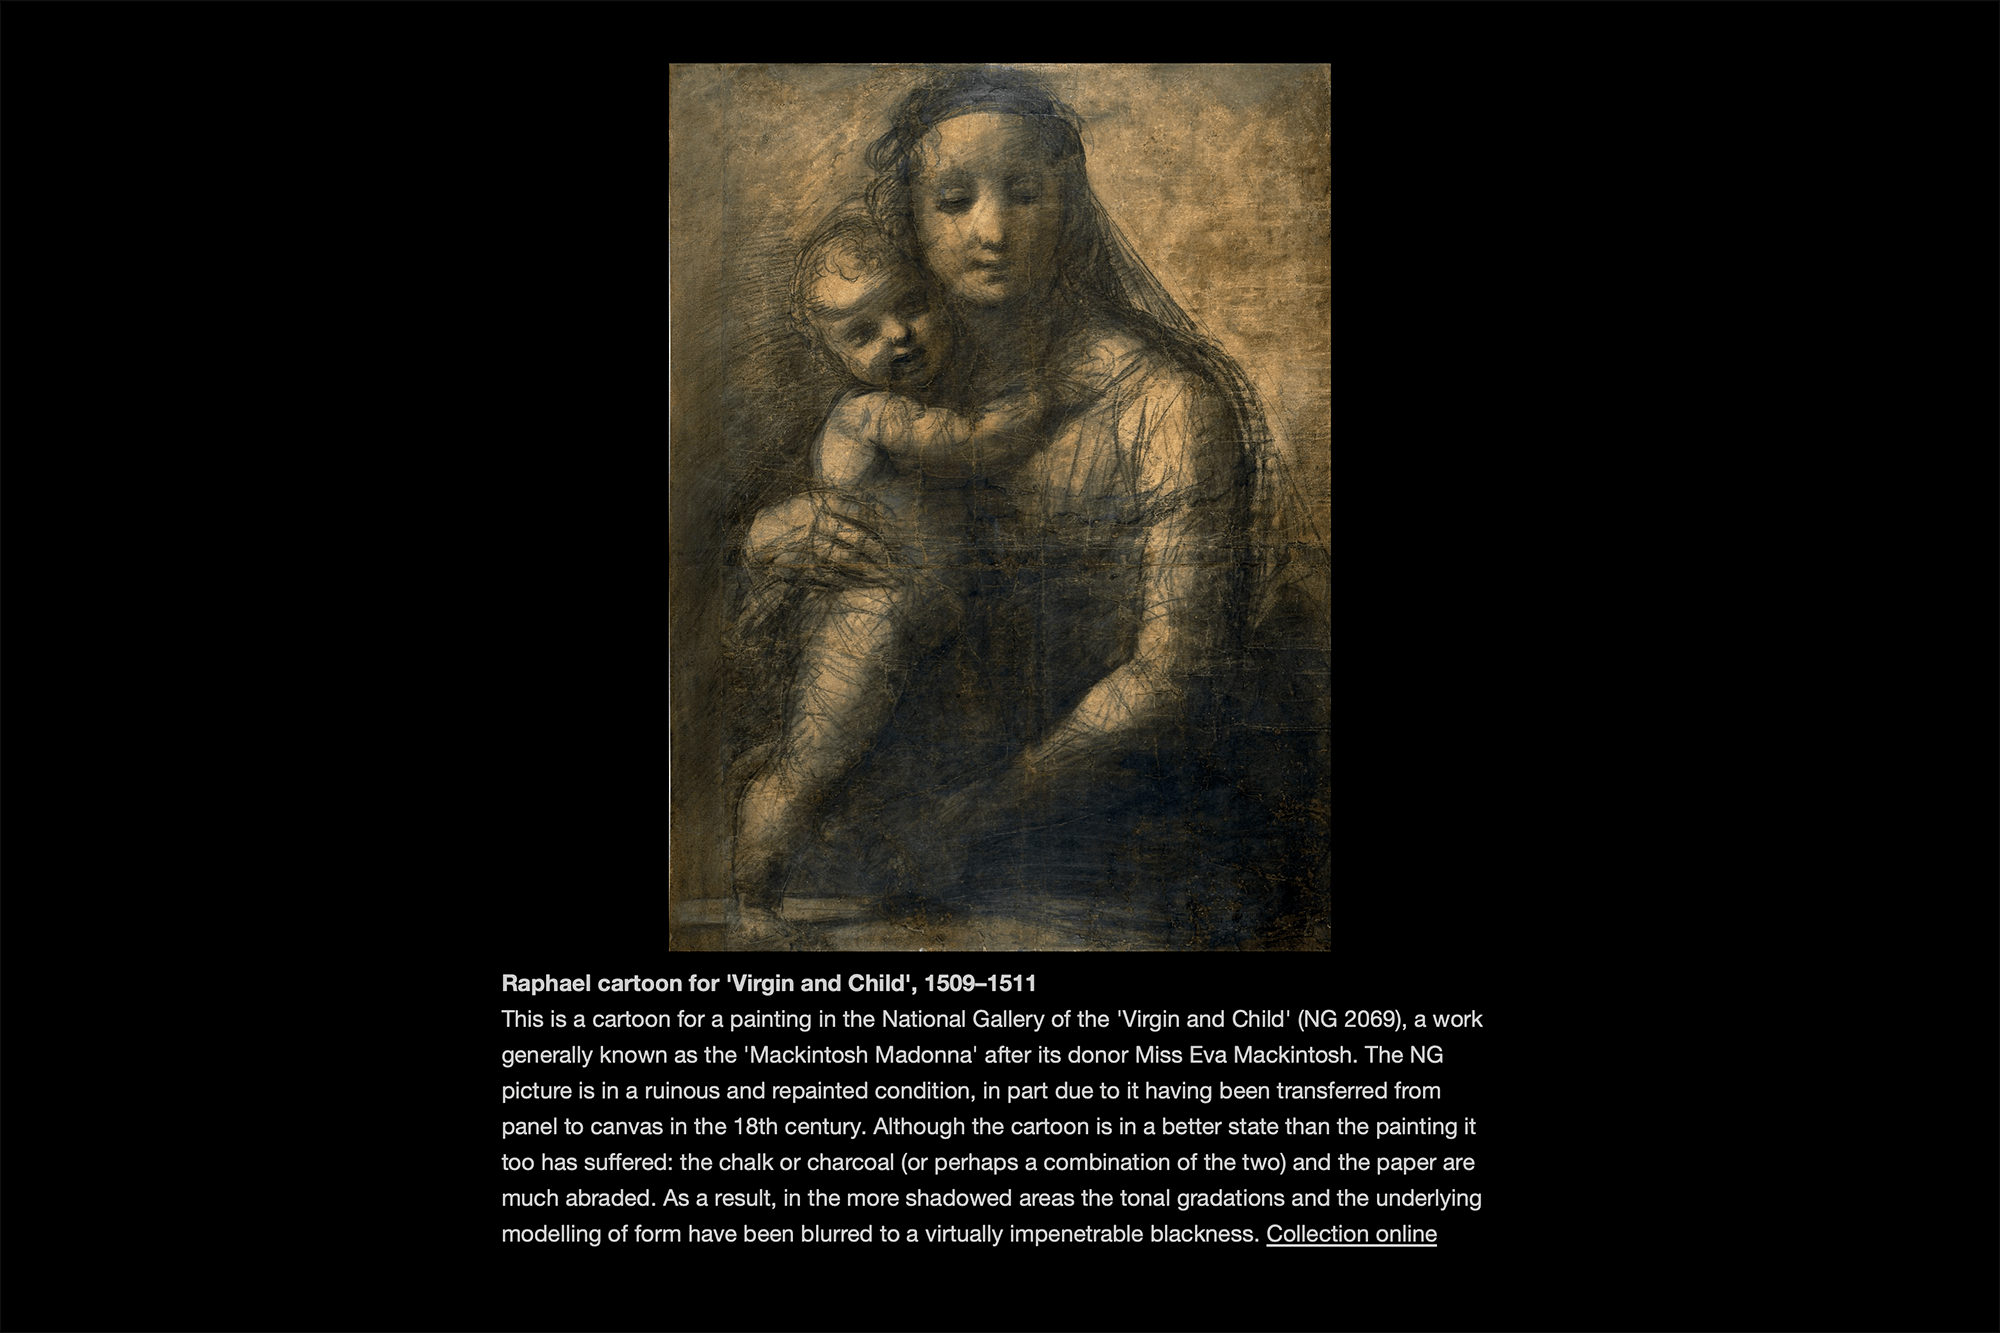 В коллекции музея есть изображение картины Рафаэля «Мадонна с младенцем» и подробное описание